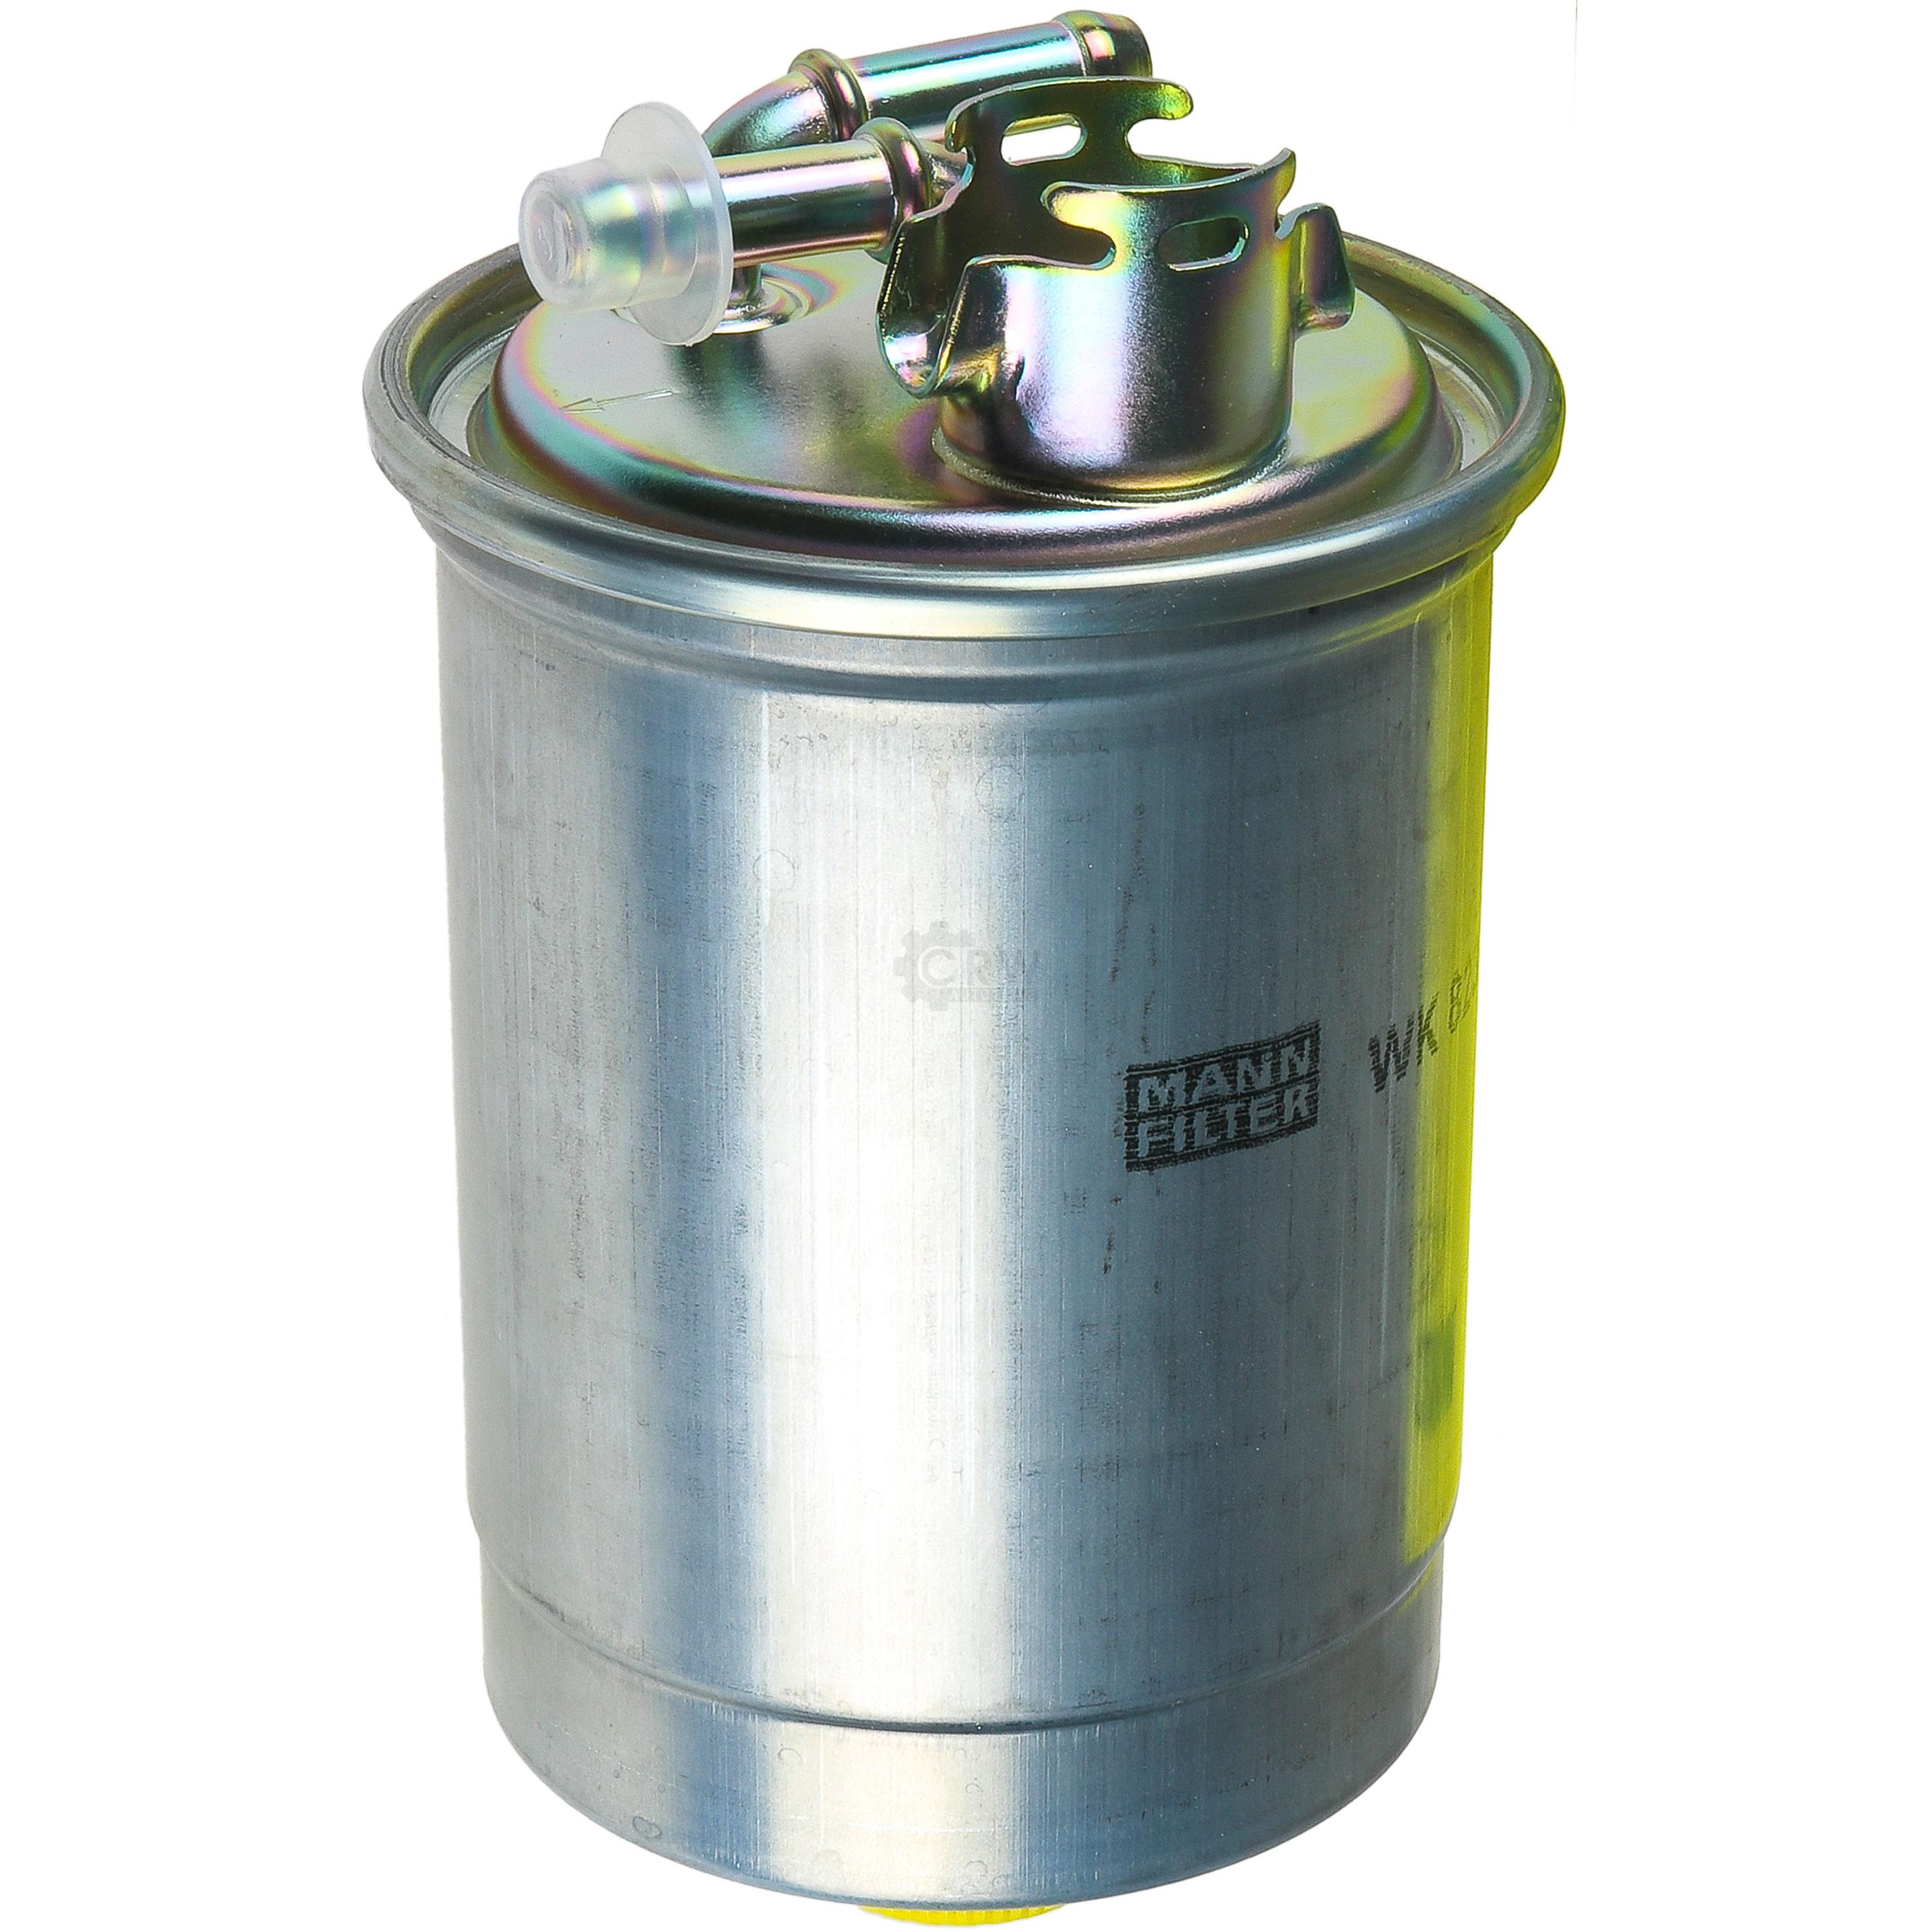 MANN-FILTER Kraftstofffilter WK 823 Fuel Filter